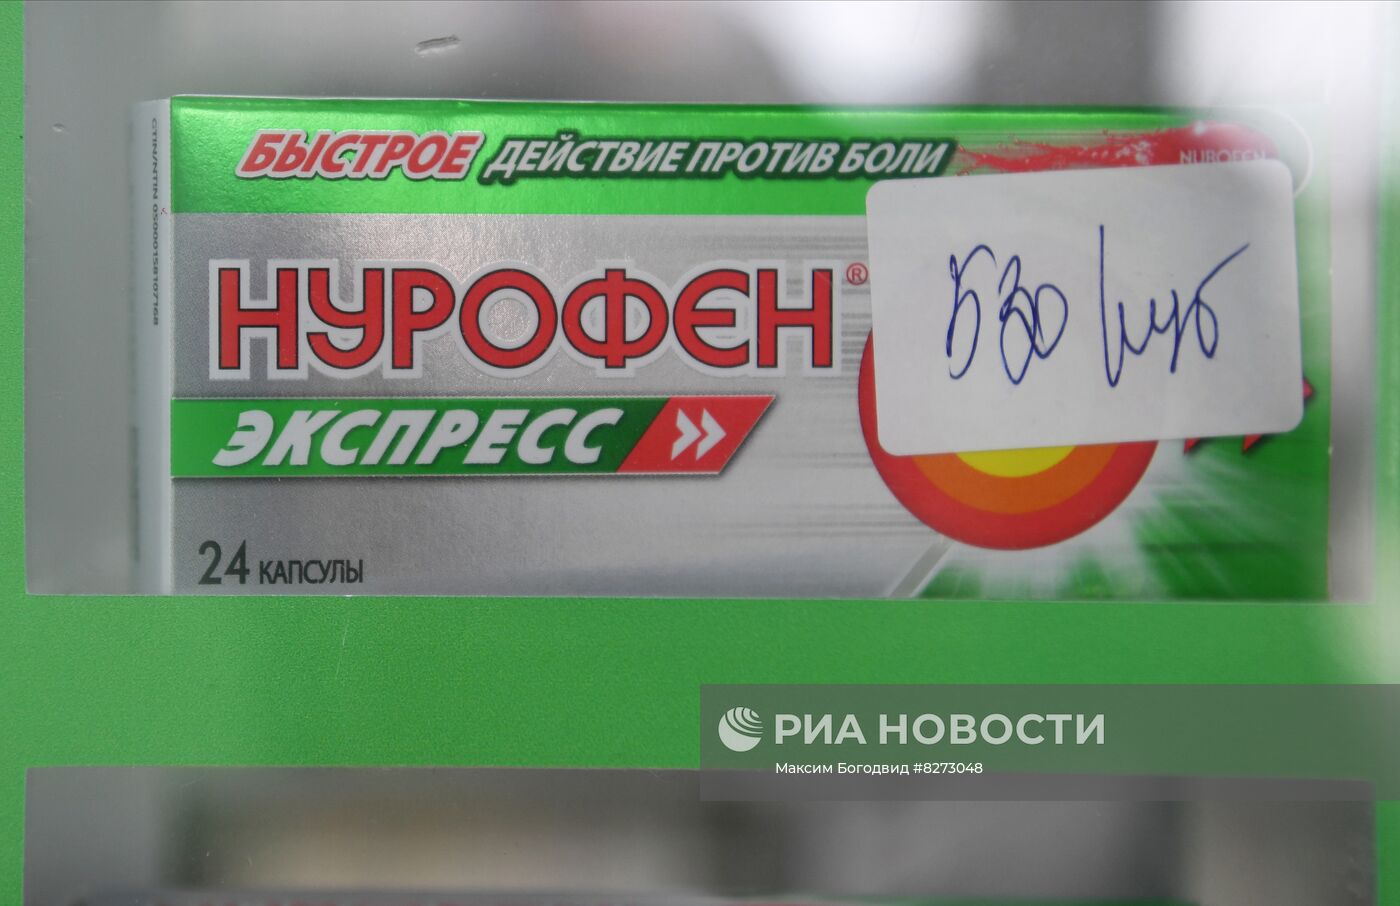 Продажа лекарств в аптеке Запорожской области